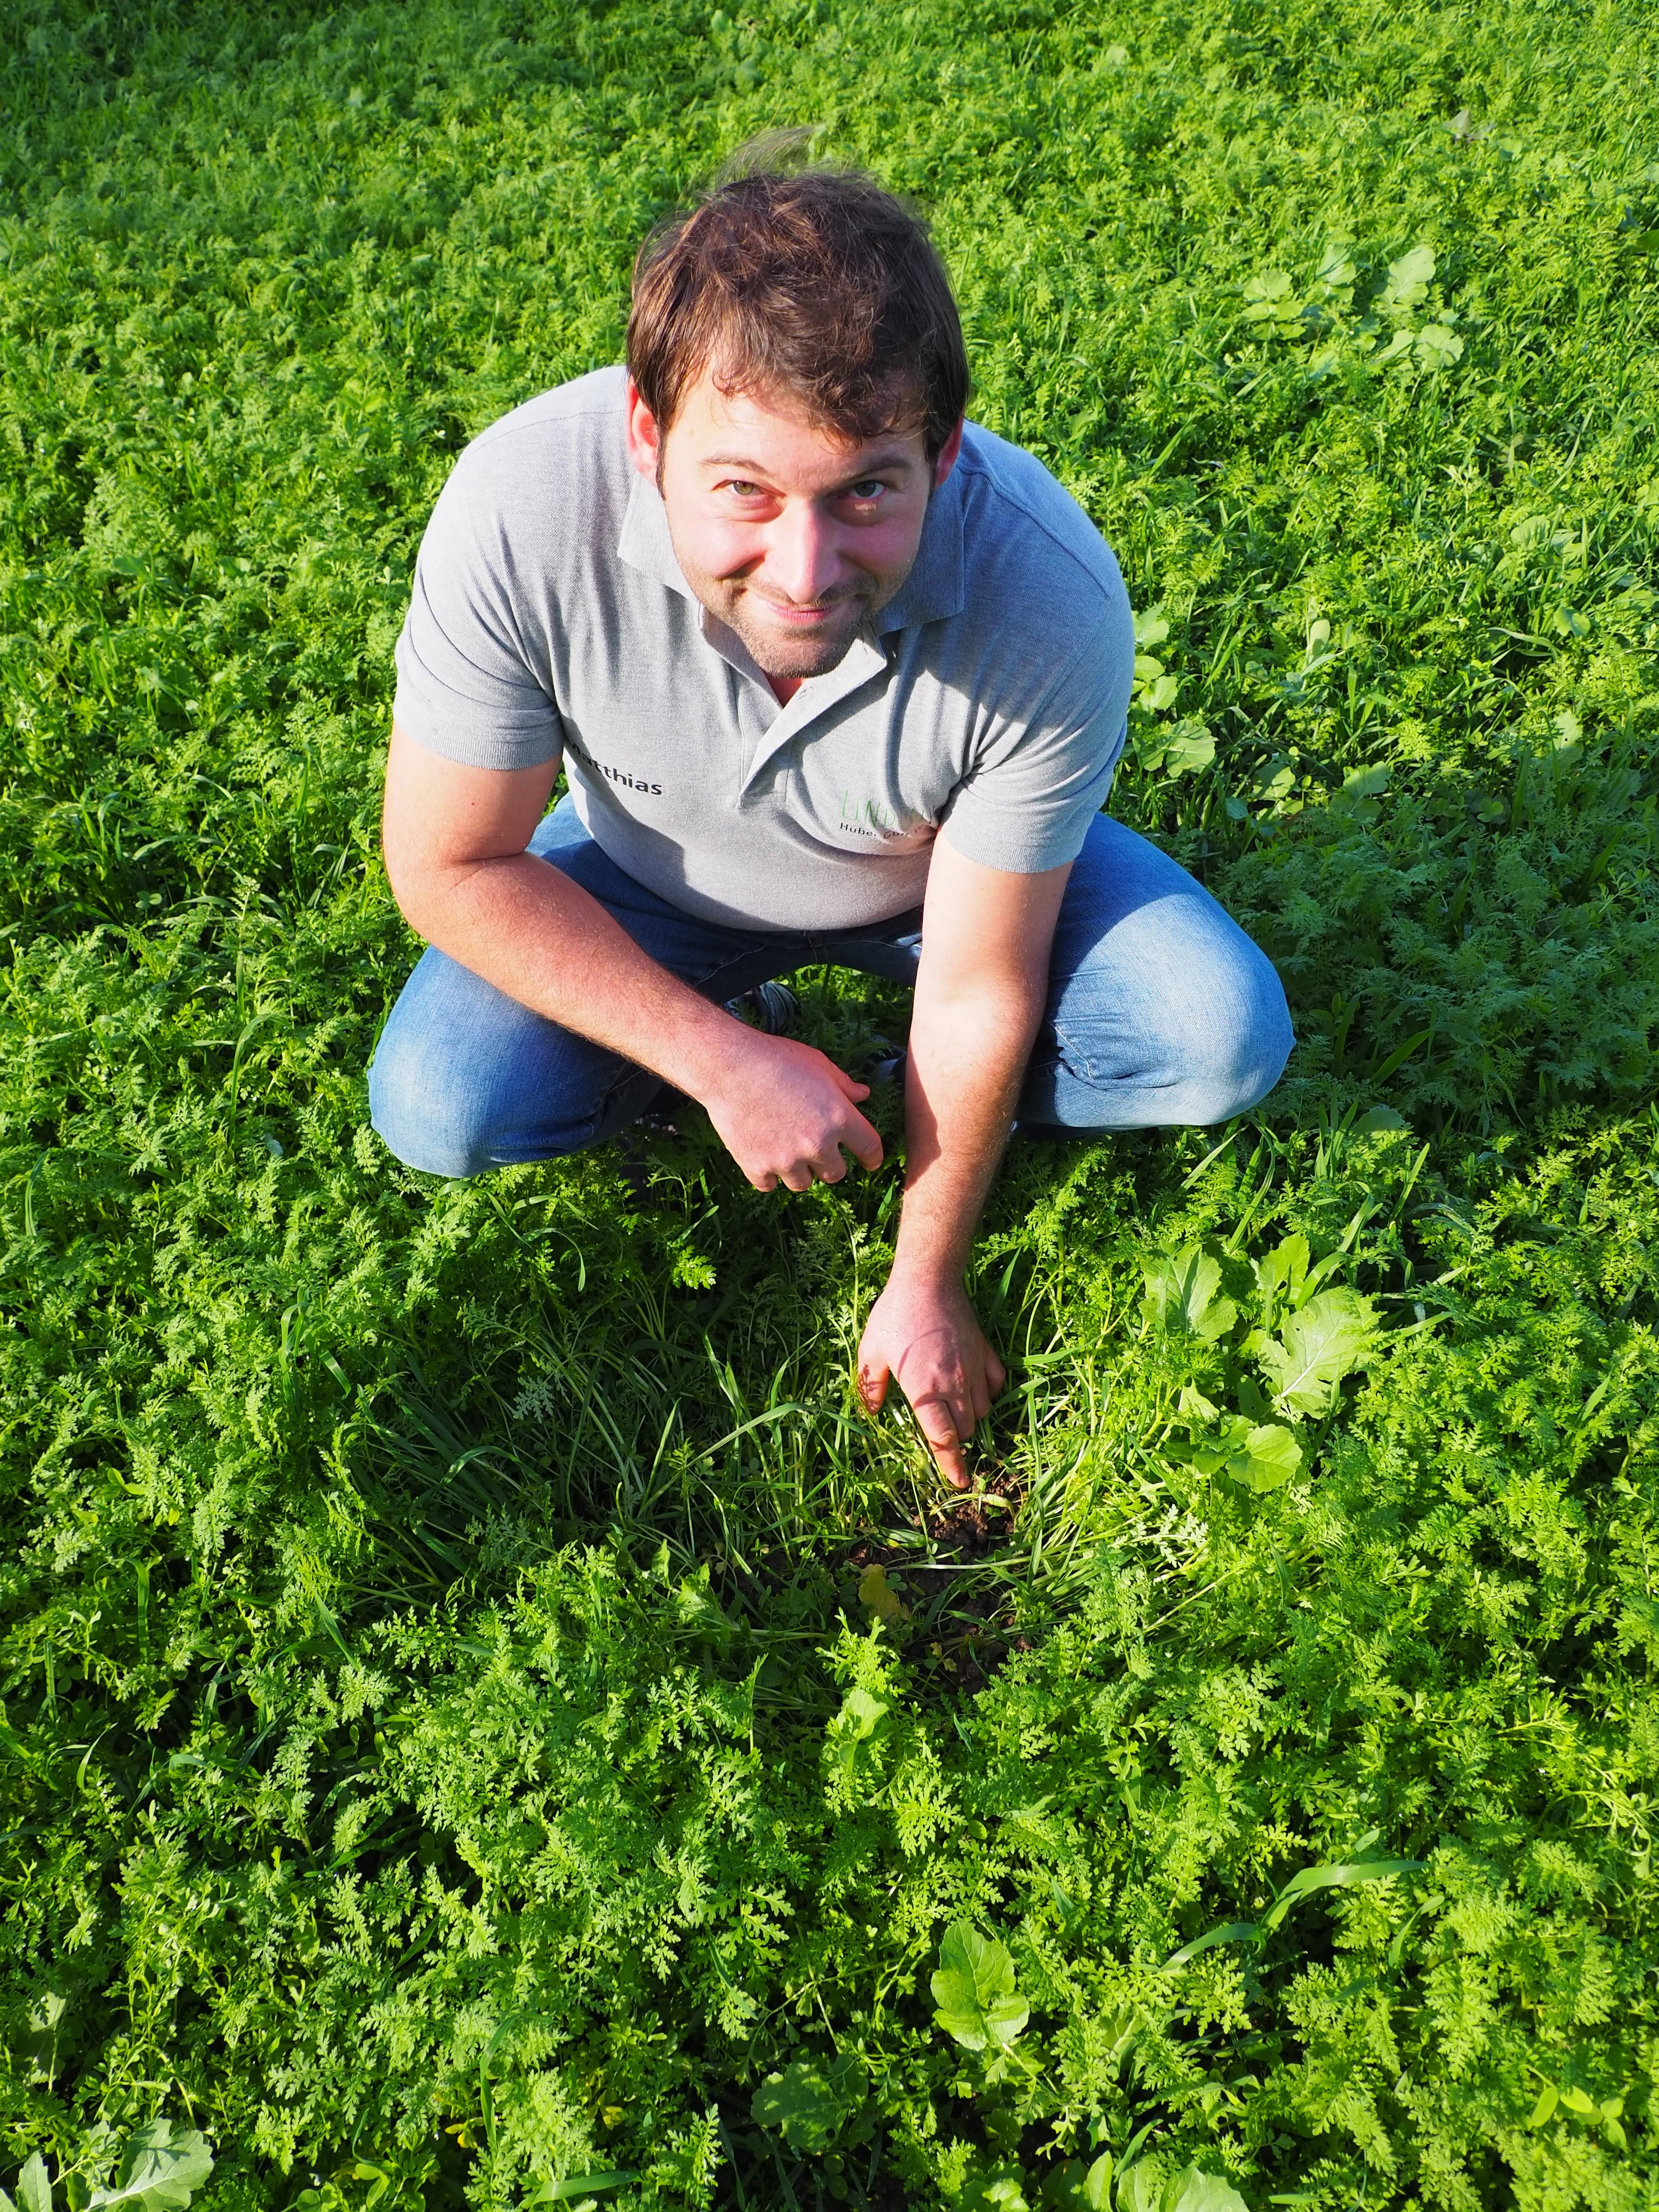 Landwirt kniet am Ackerboden mit üppig wachsenden Grünpflanzen.